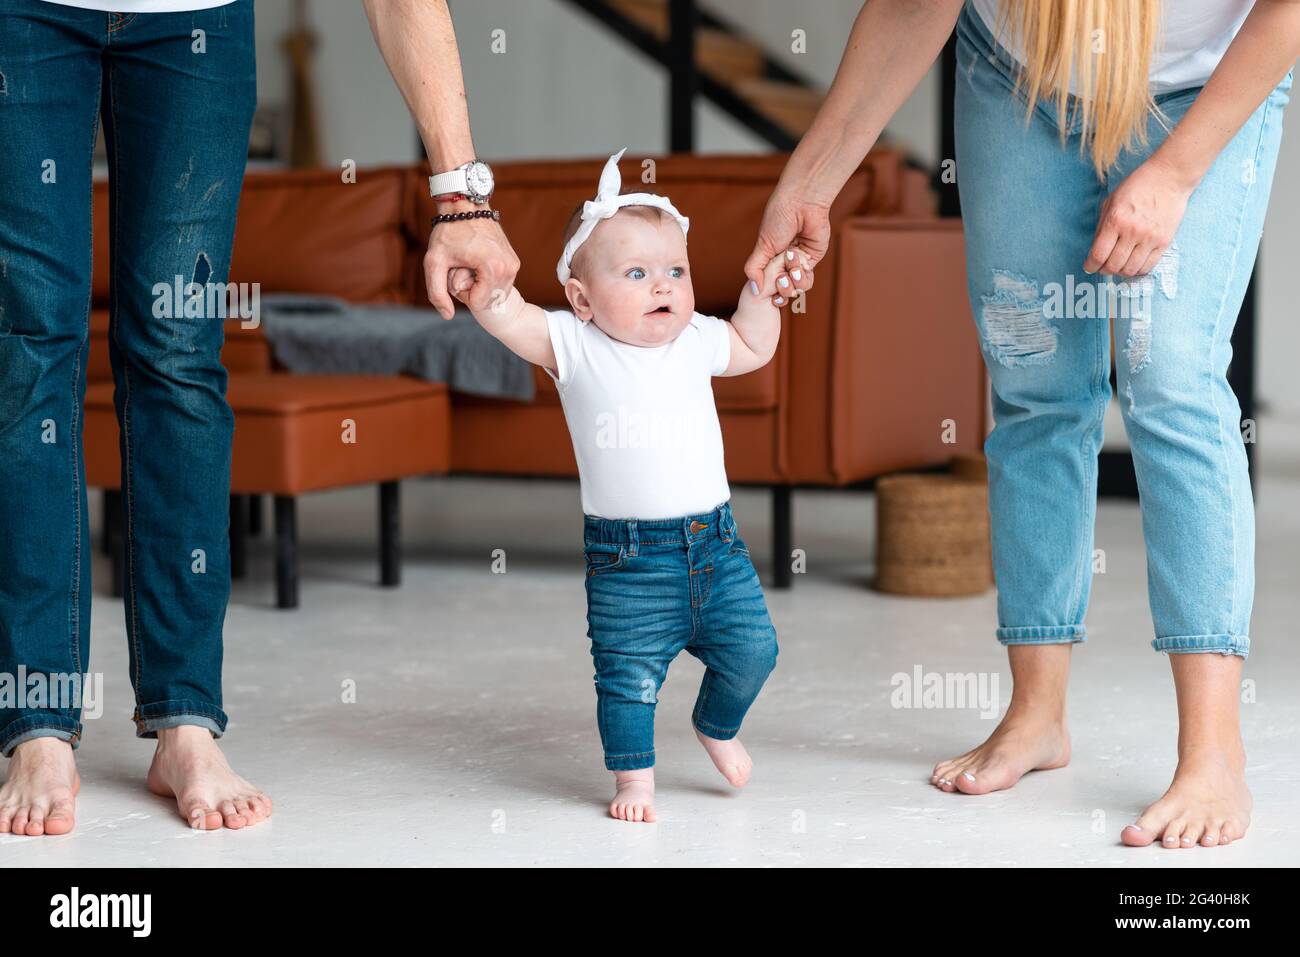 Les parents tiennent une petite fille mignonne par les poignées, lui apprennent à marcher Banque D'Images